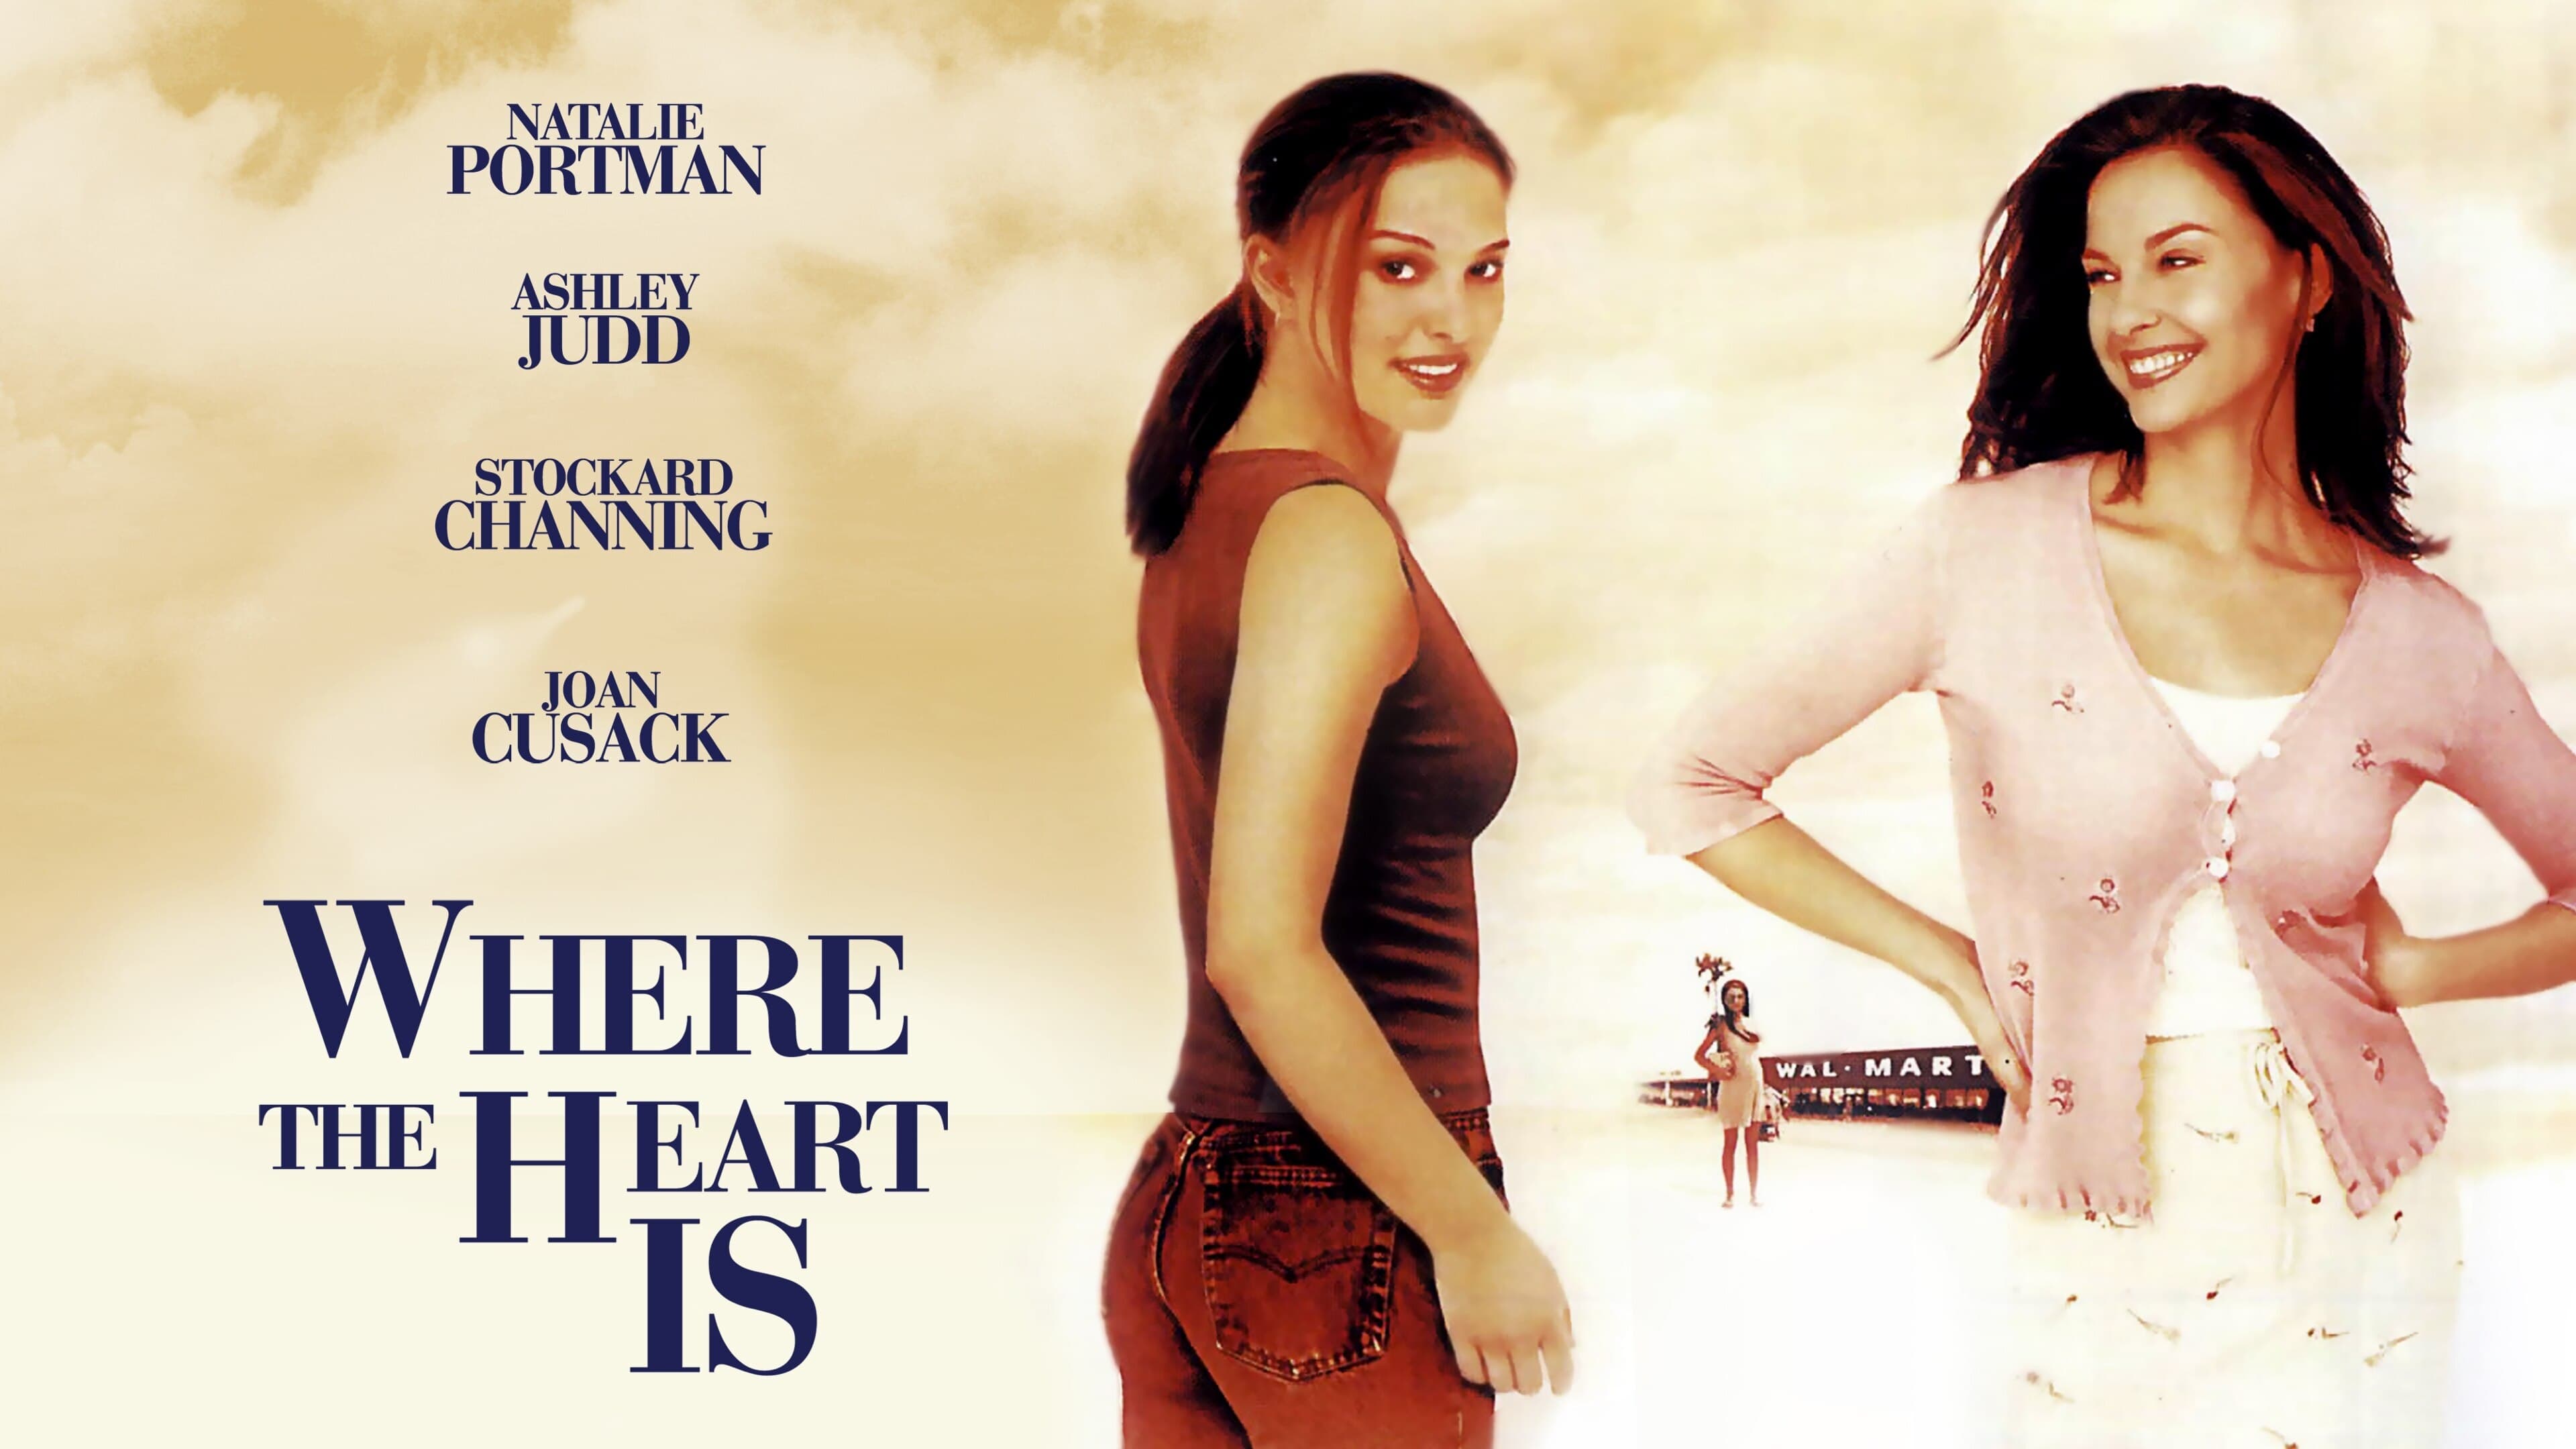 Qui, dove batte il cuore (2000)